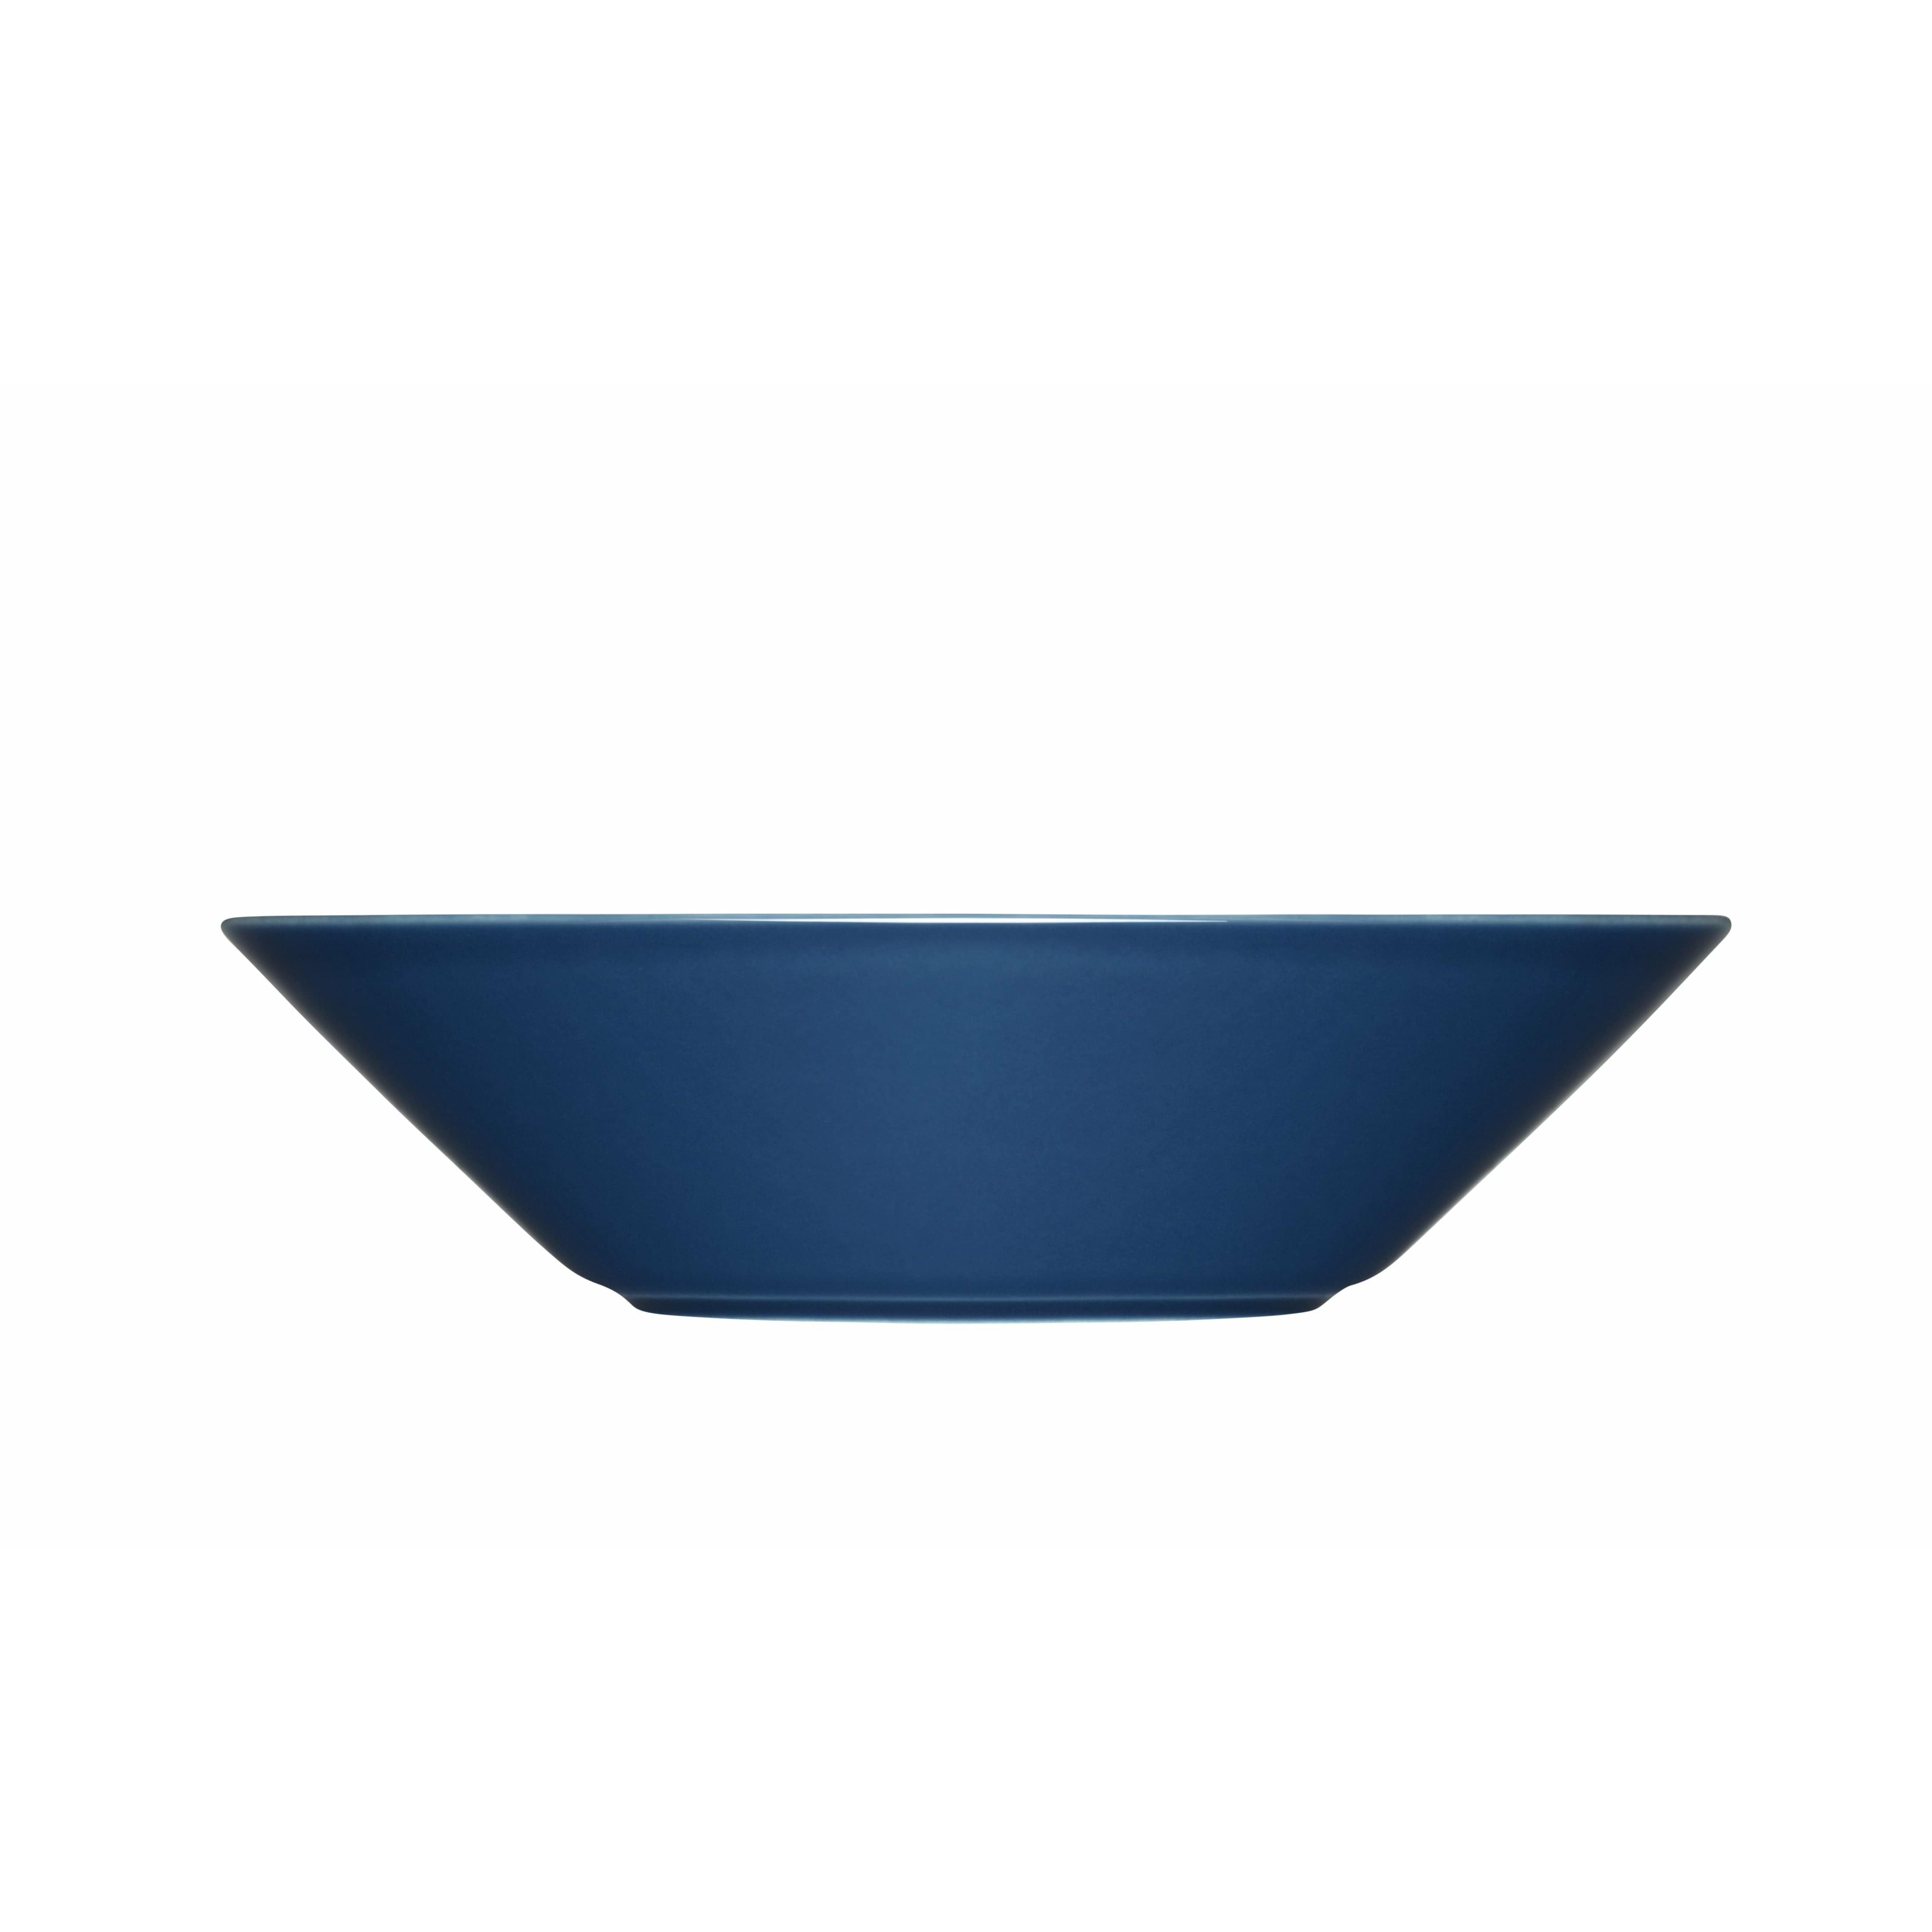 Iittala Teema djup platta 21 cm, vintage blått